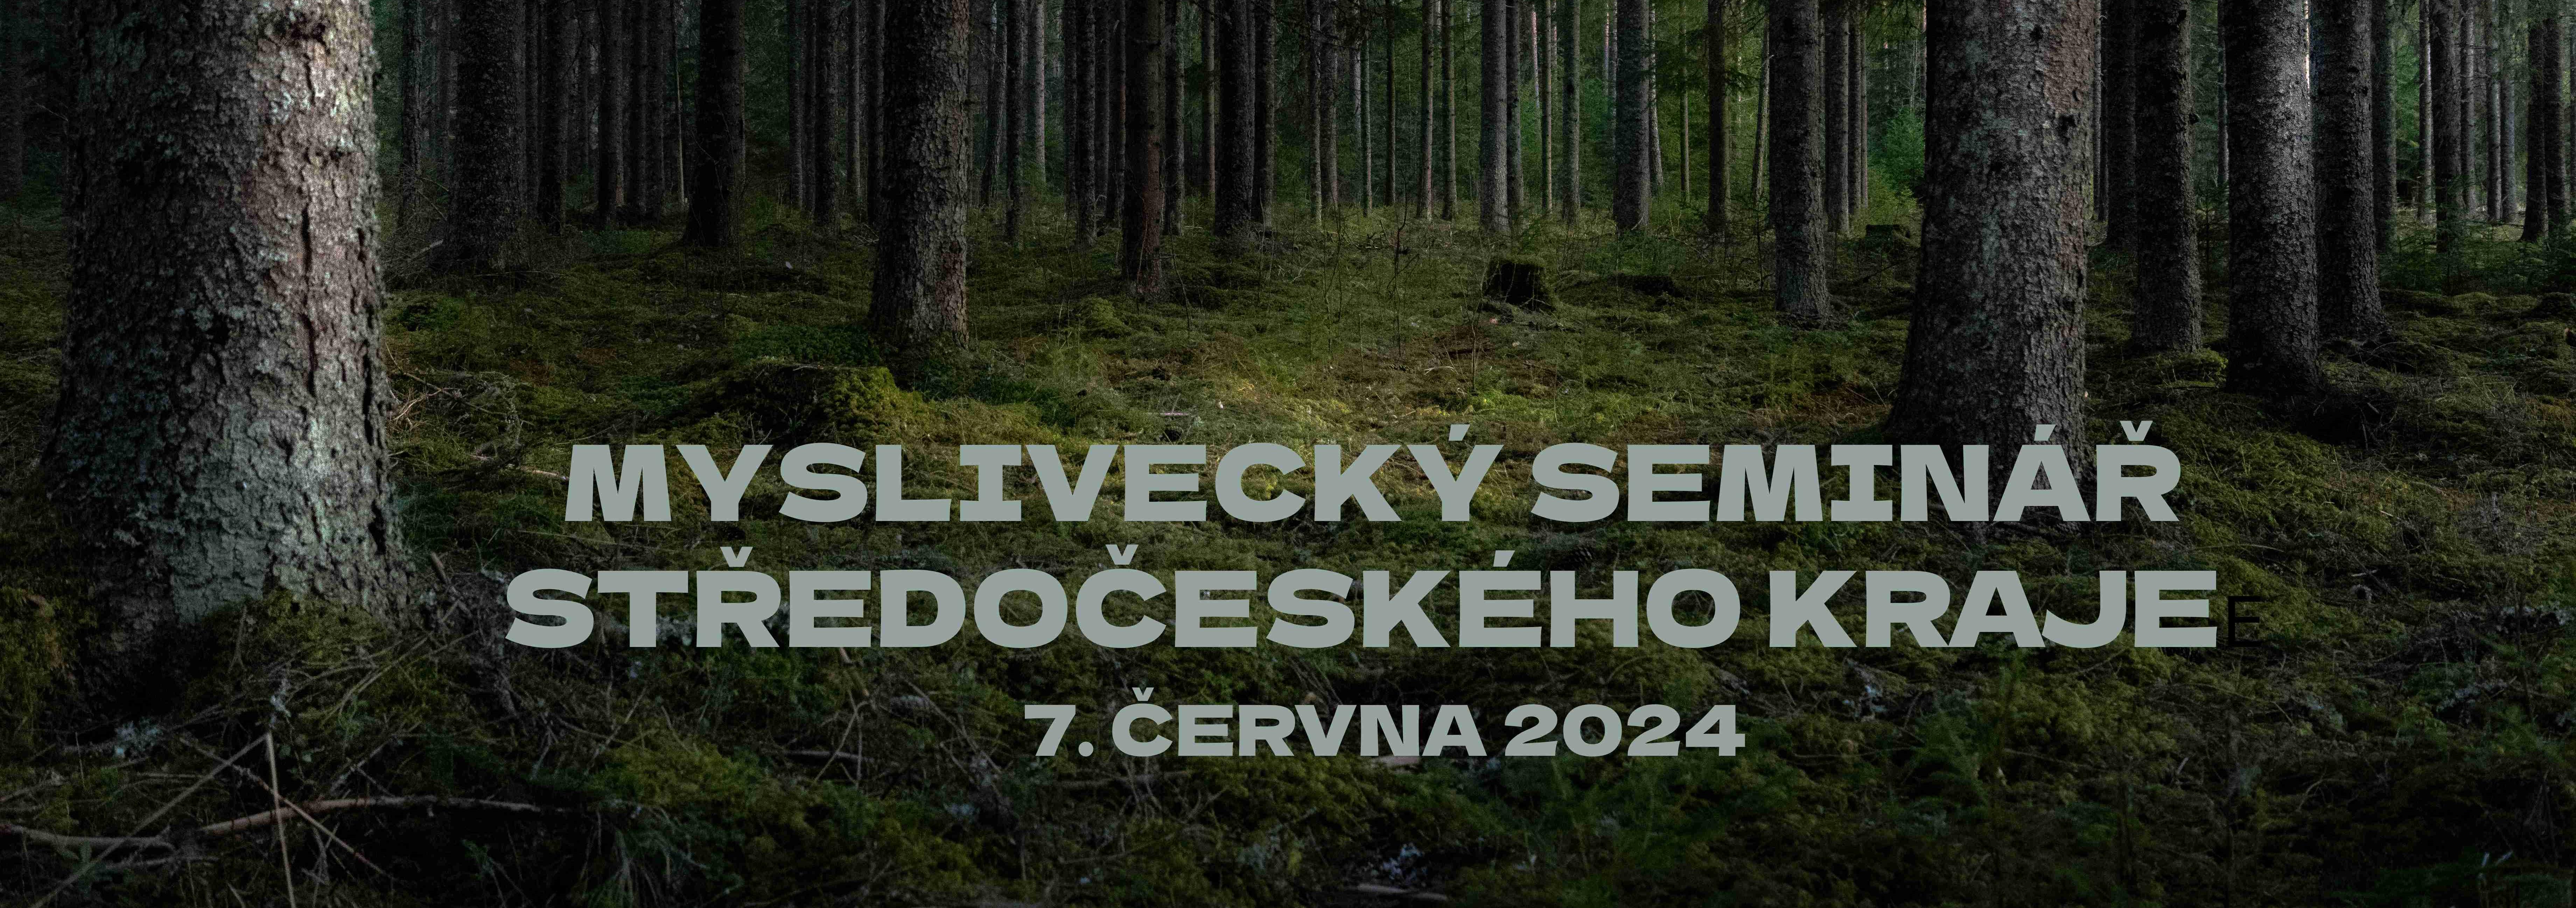 Myslivecký seminář Středočeského kraje